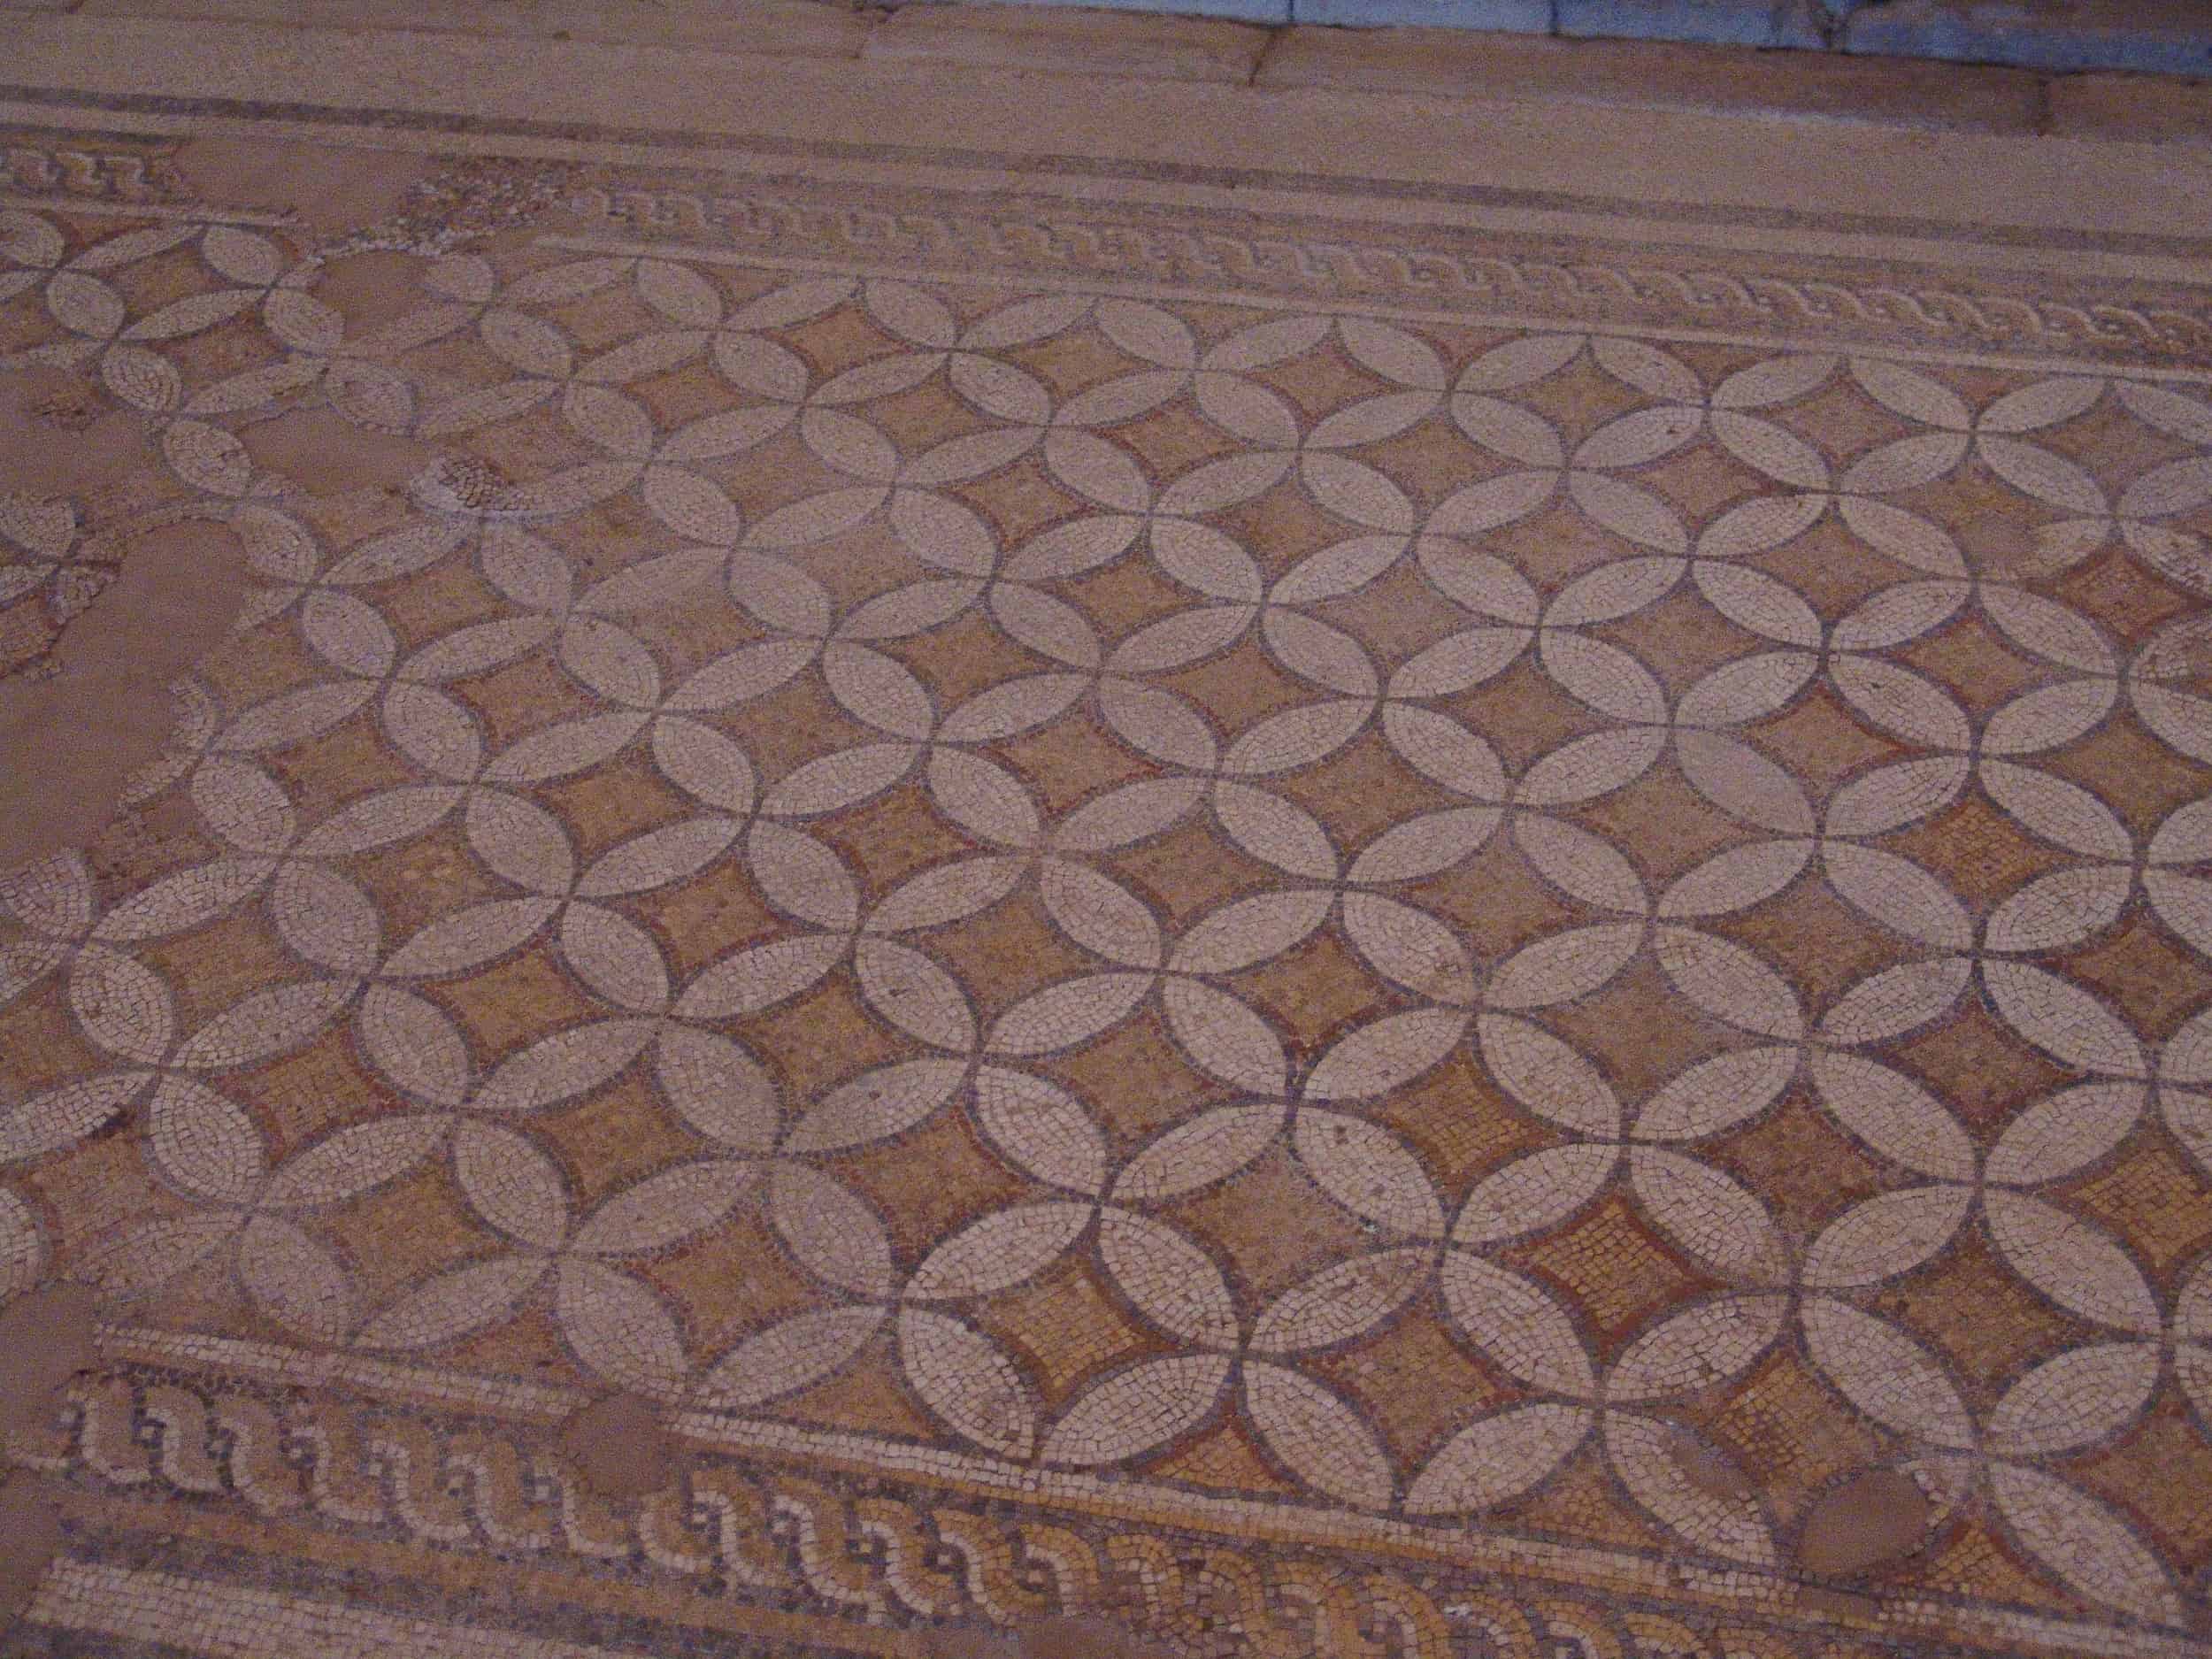 Mosaic floor of Building Z